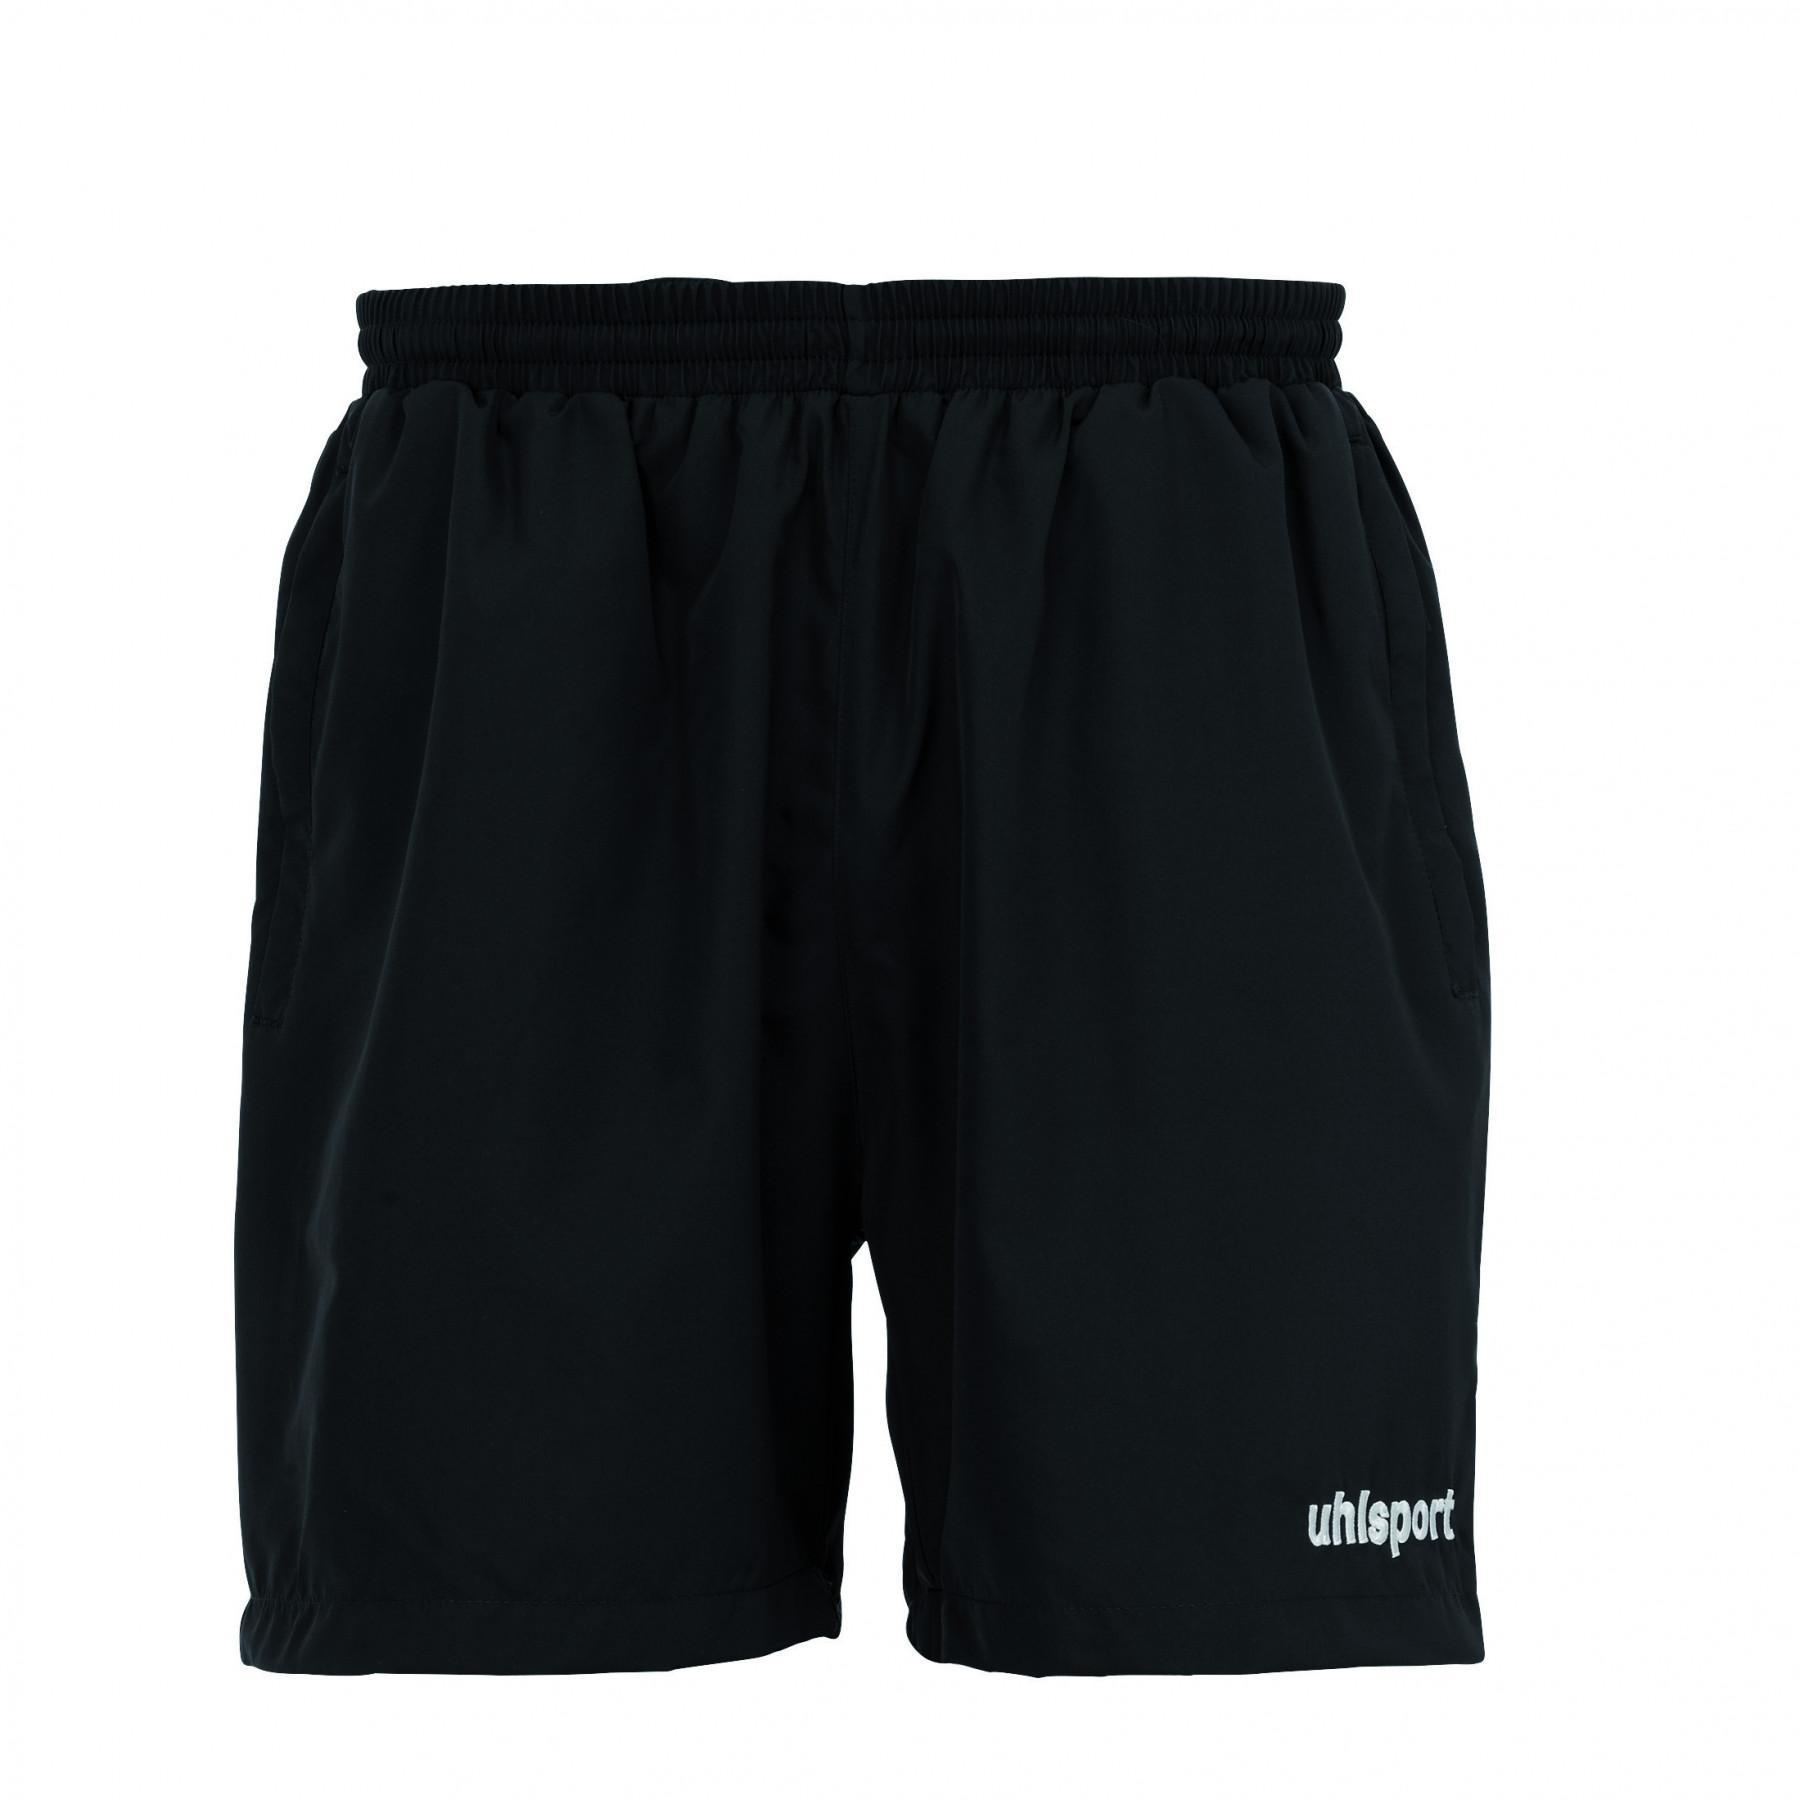 Children's shorts Uhlsport Essential